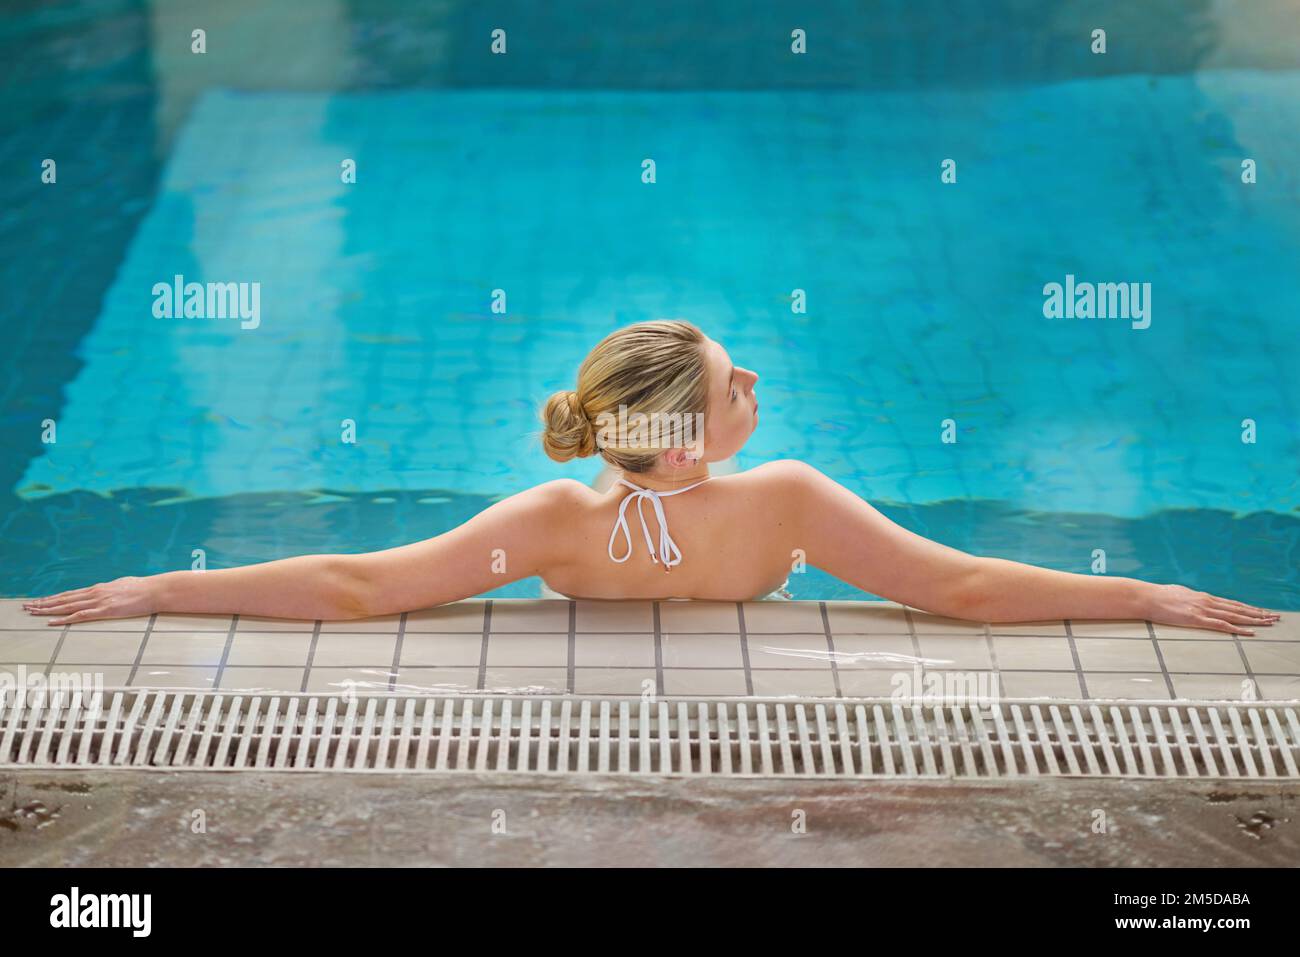 Acque calmanti per liberare la mente. Ripresa di una giovane donna che si rilassa in piscina presso un centro benessere. Foto Stock